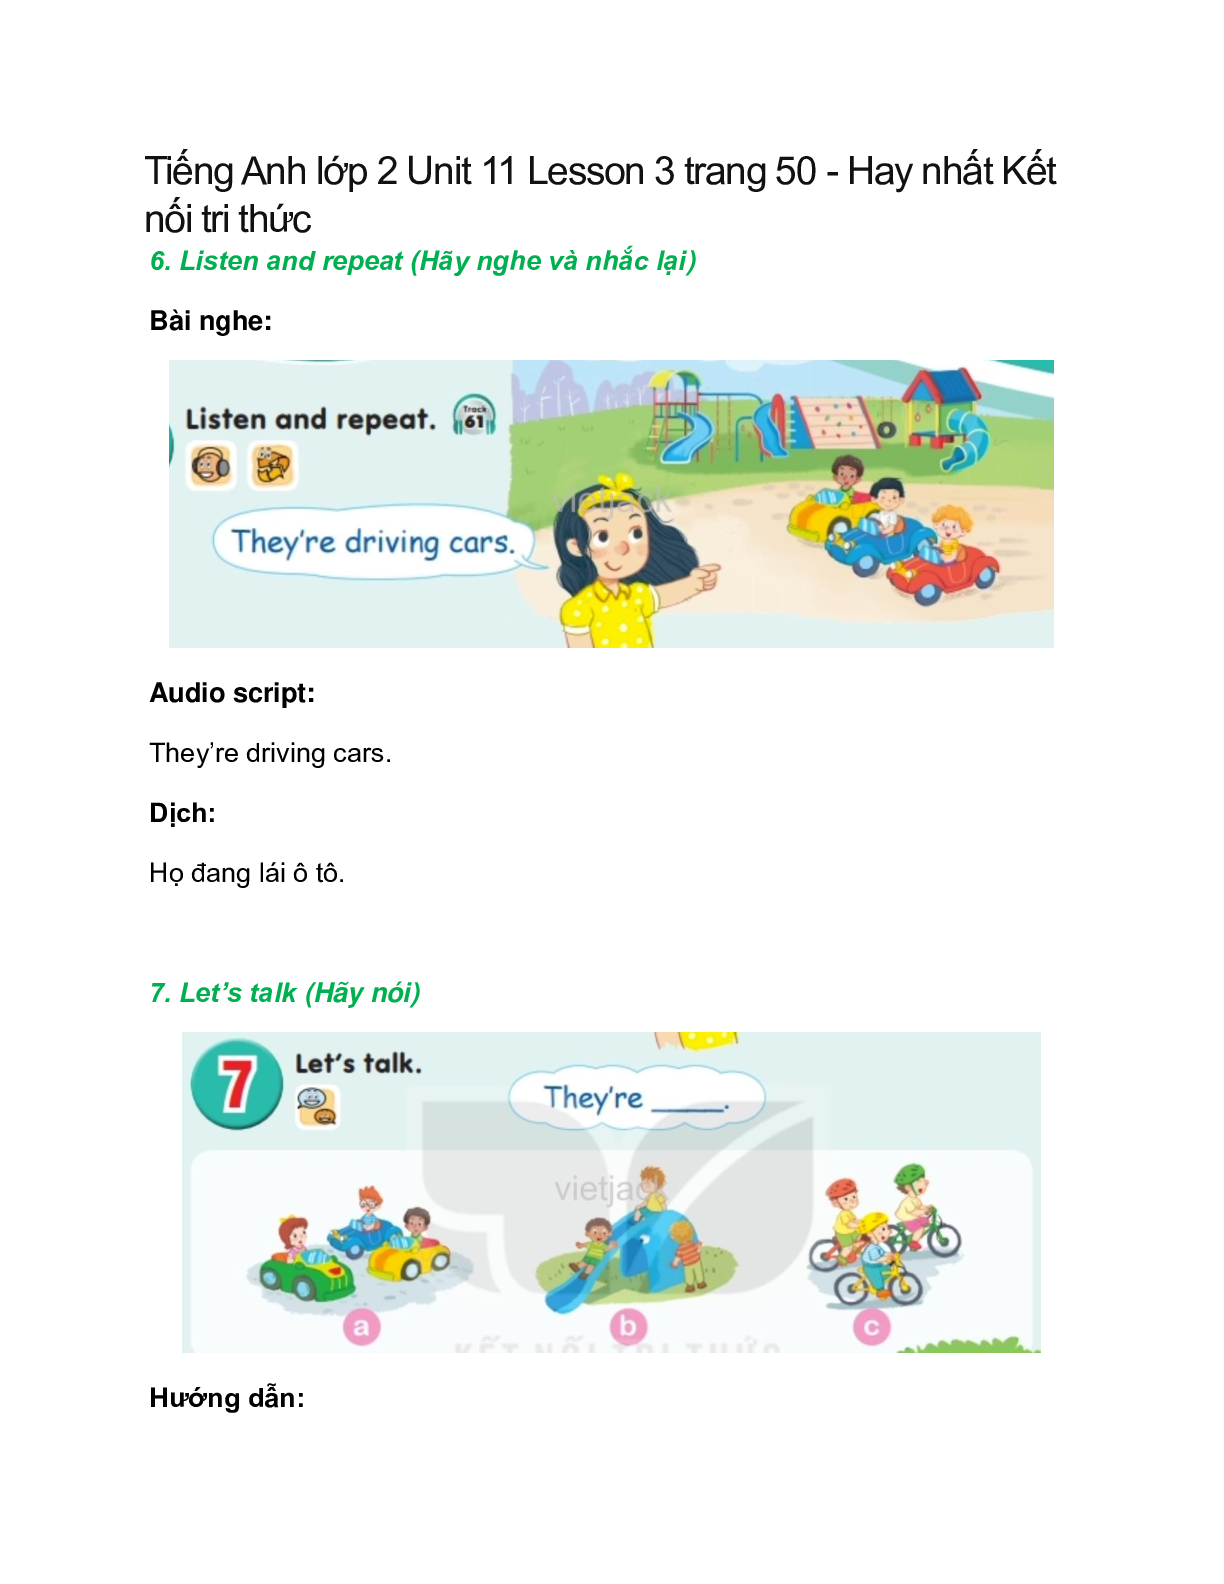 Tiếng Anh lớp 2 Unit 11 Lesson 3 trang 50 – Kết nối tri thức (trang 1)